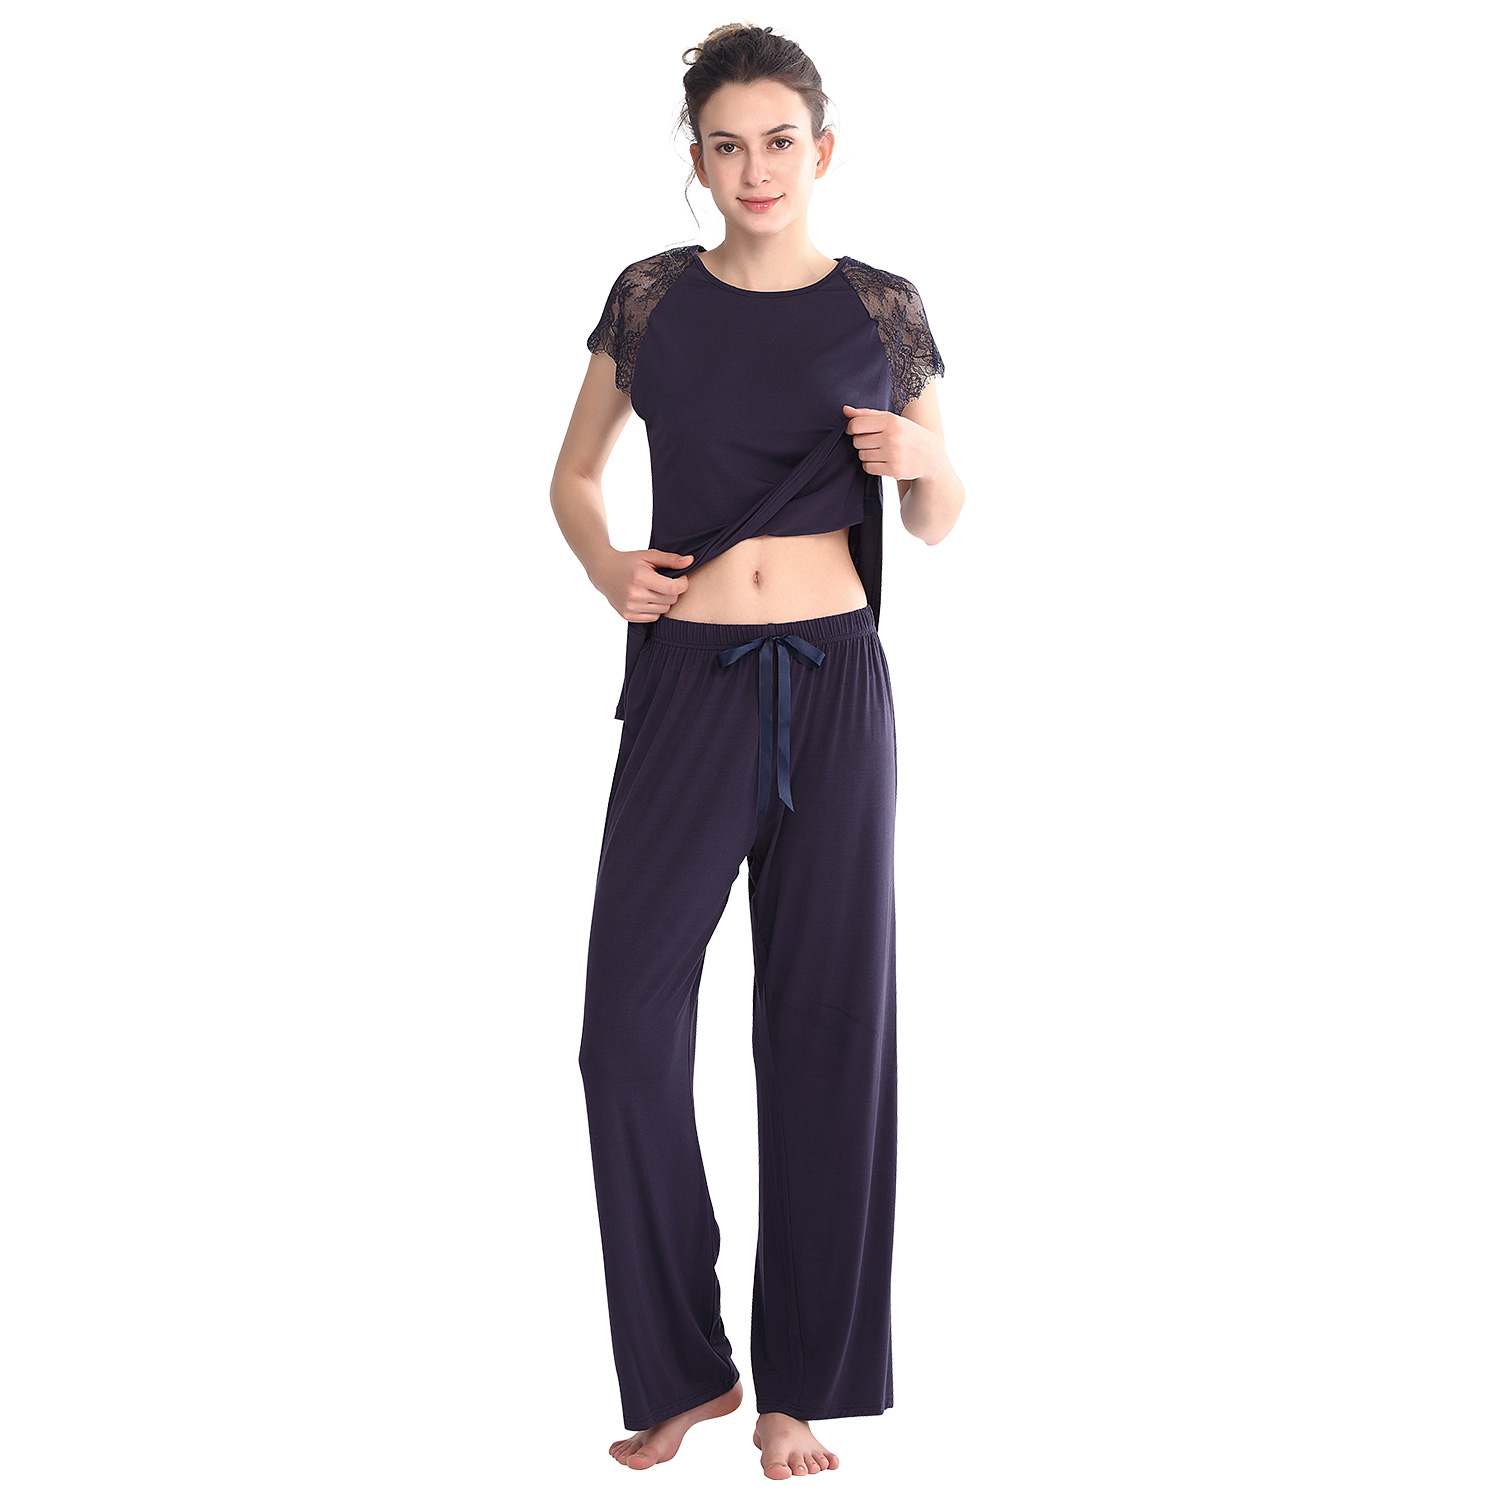 Keyocean Women's Sleepwear or Pajama Sets - Keyocean Cotton